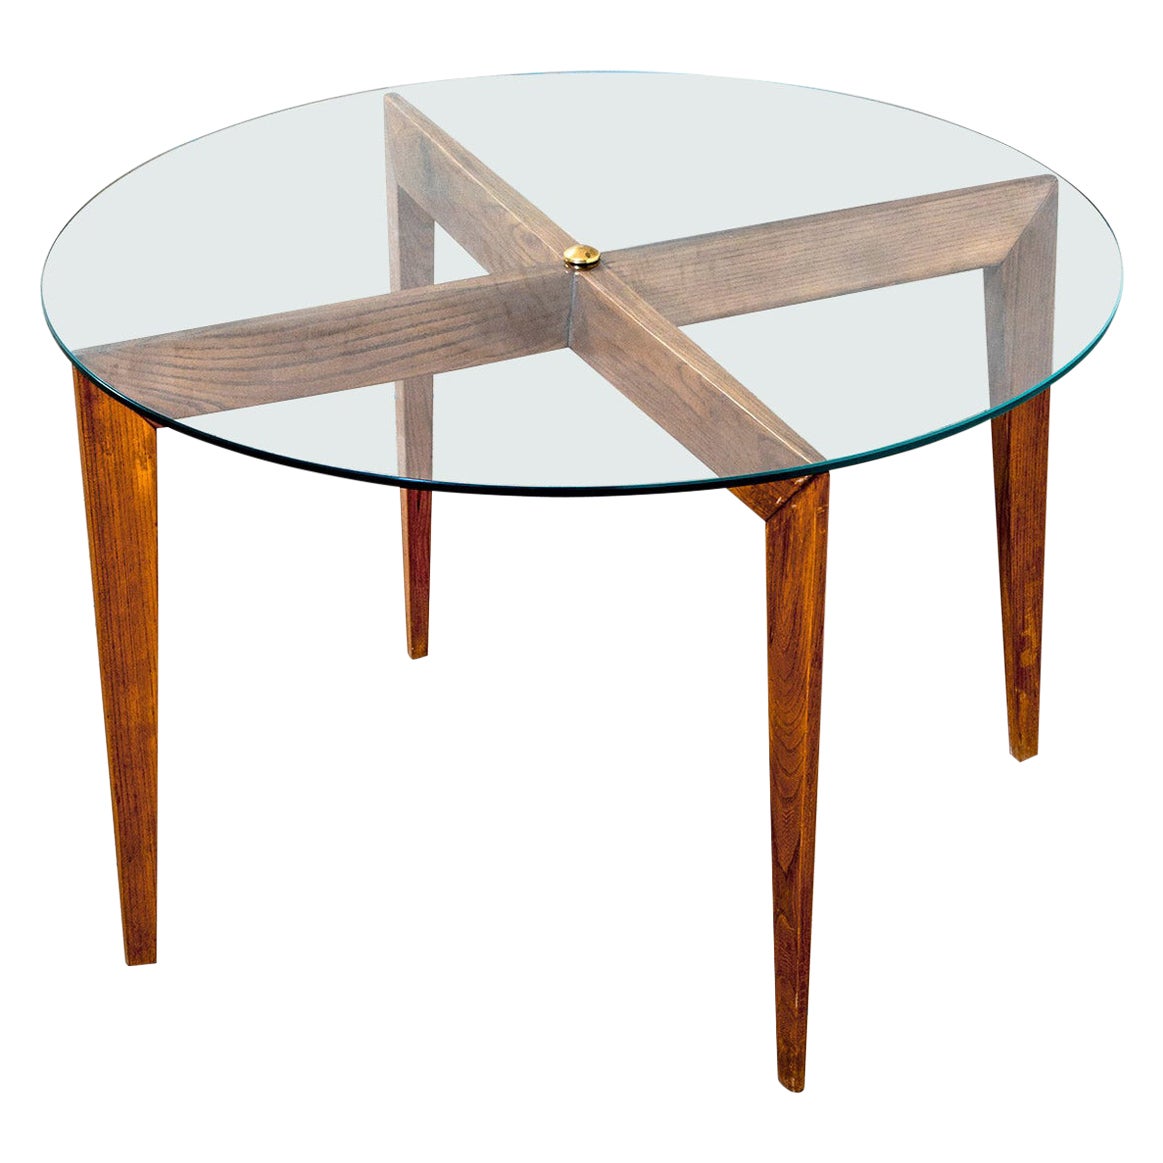 Table basse Gio Ponti du 20ème siècle pour Isa Bergamo en bois avec plateau en verre rond